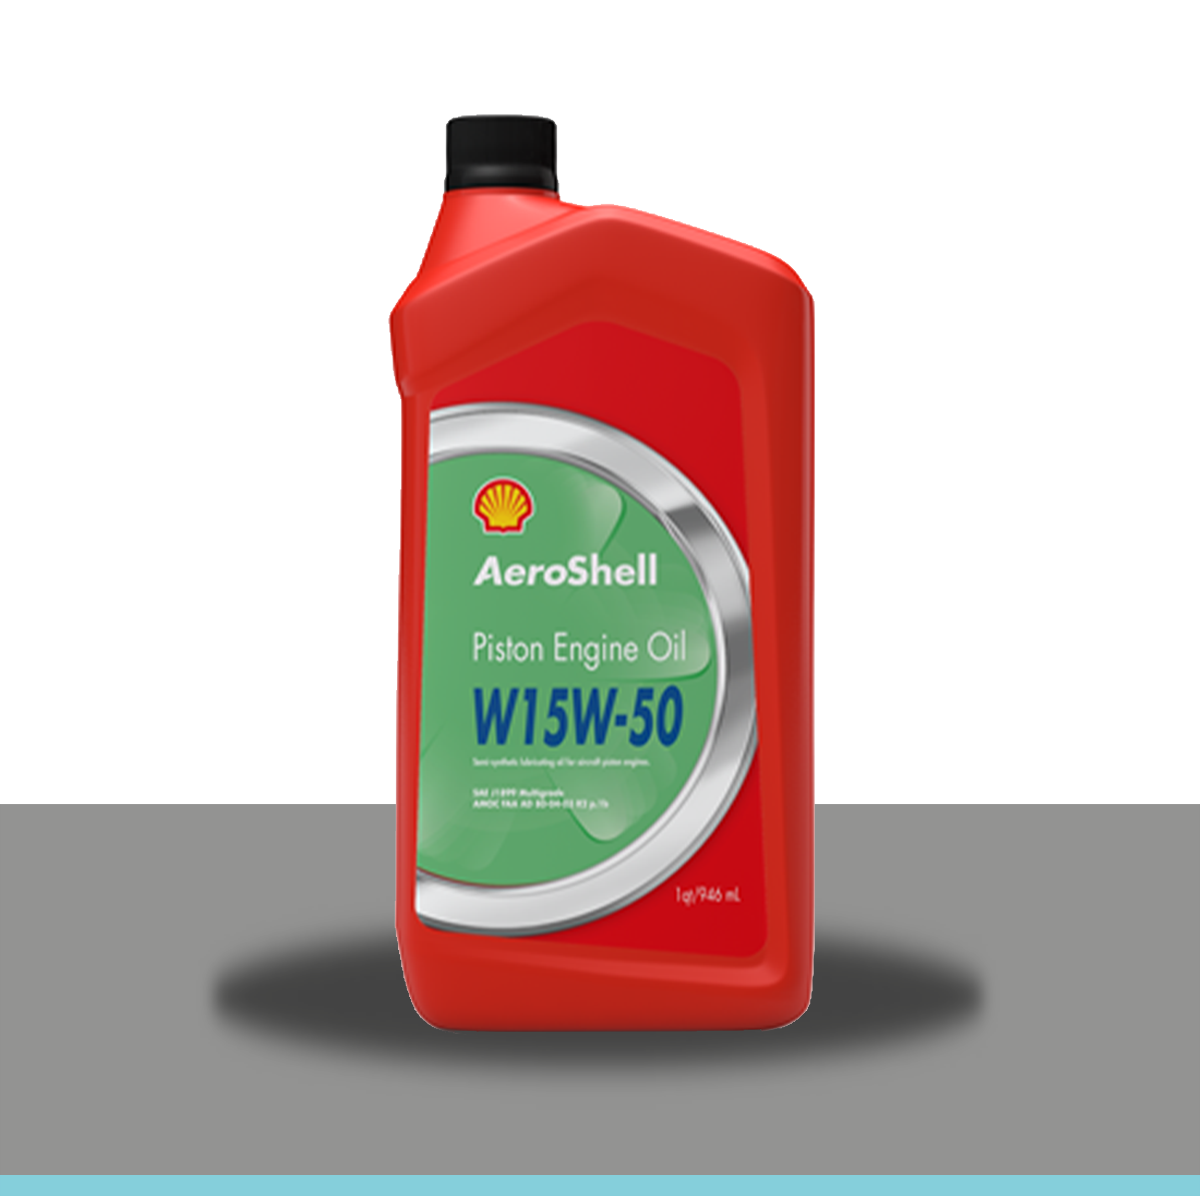 Aeroshell 15w50 bottle